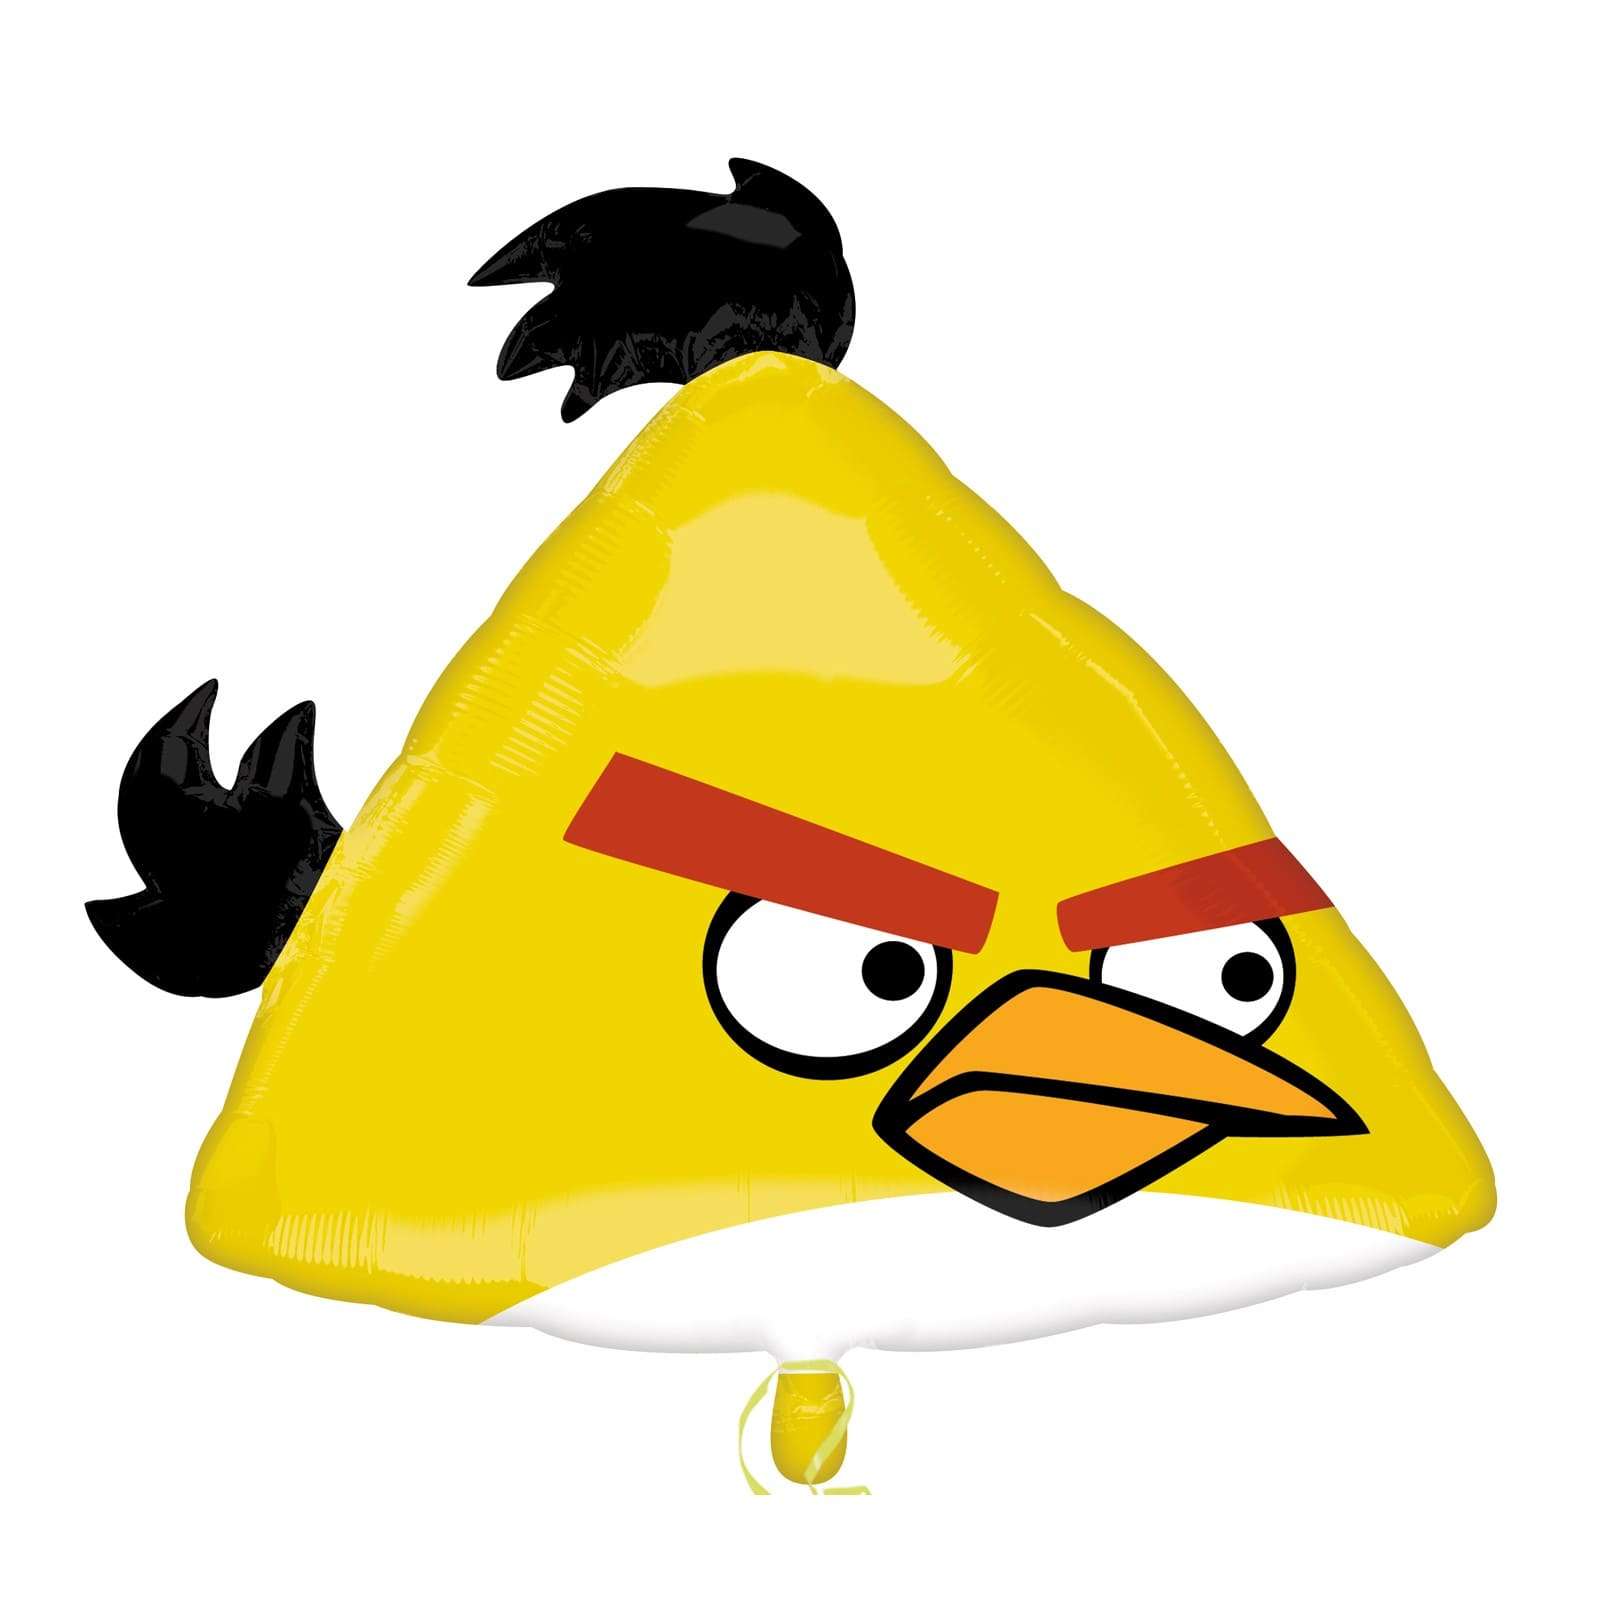 Angry Birds Чак жёлтая птичка шарик из фольги картинка